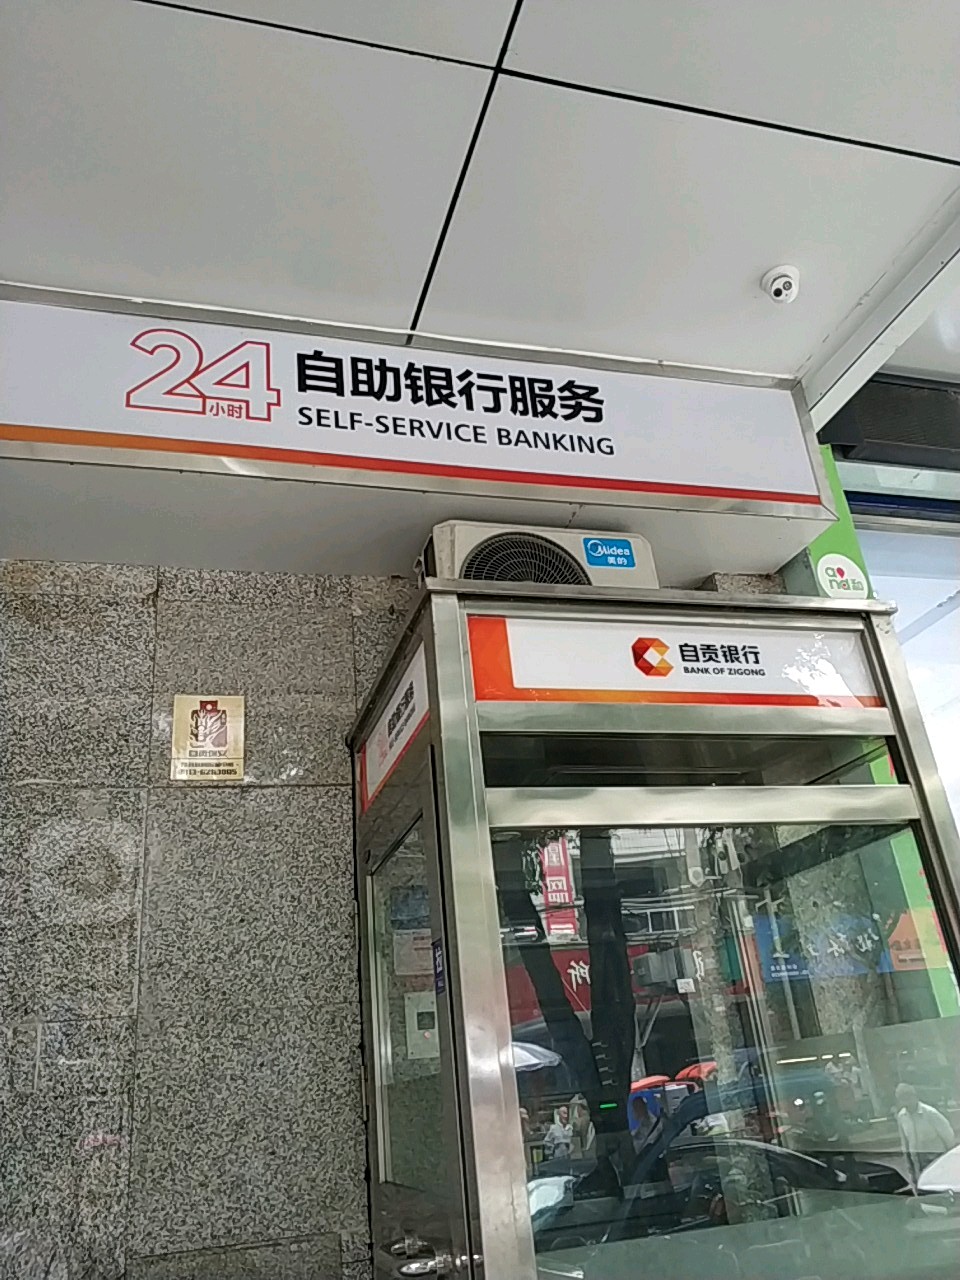 自贡商业银行24小时自助银行服务(桂林街支行)